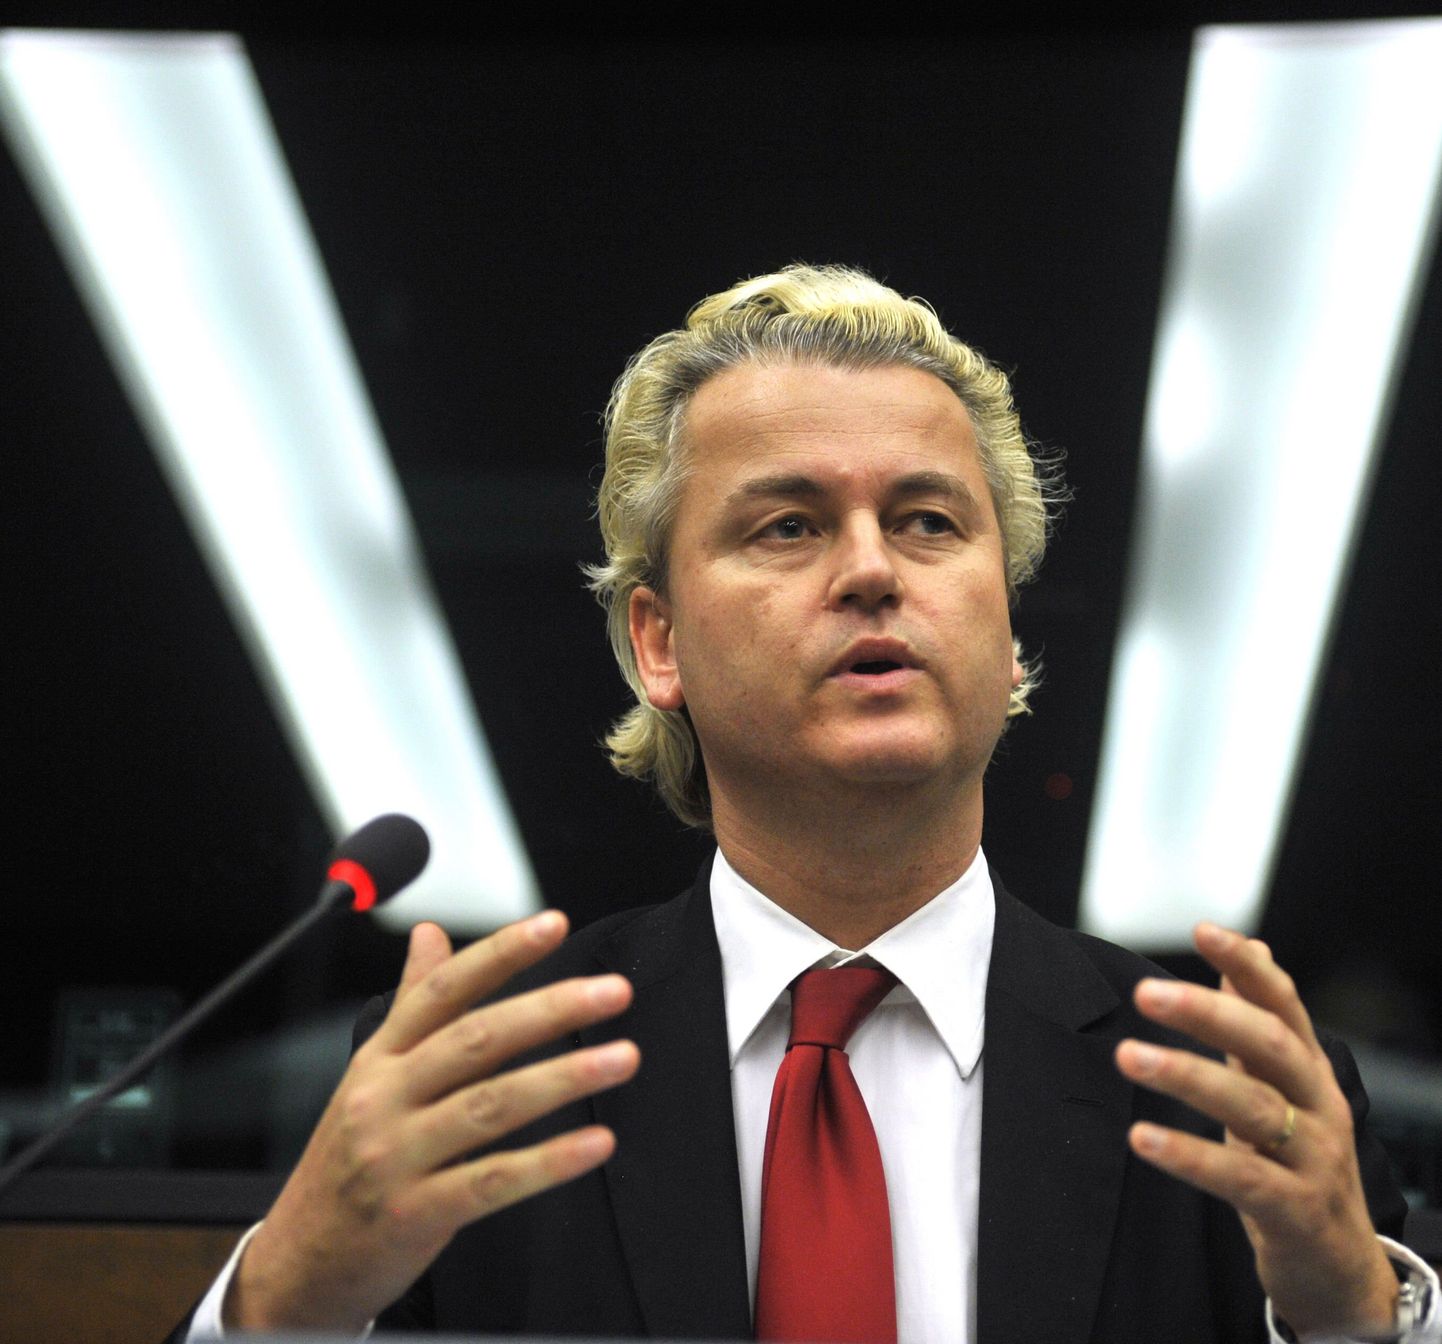 Hollandi paremäärmuslik poliitik Geert Wilders esinemas Euroopa Parlamendis.